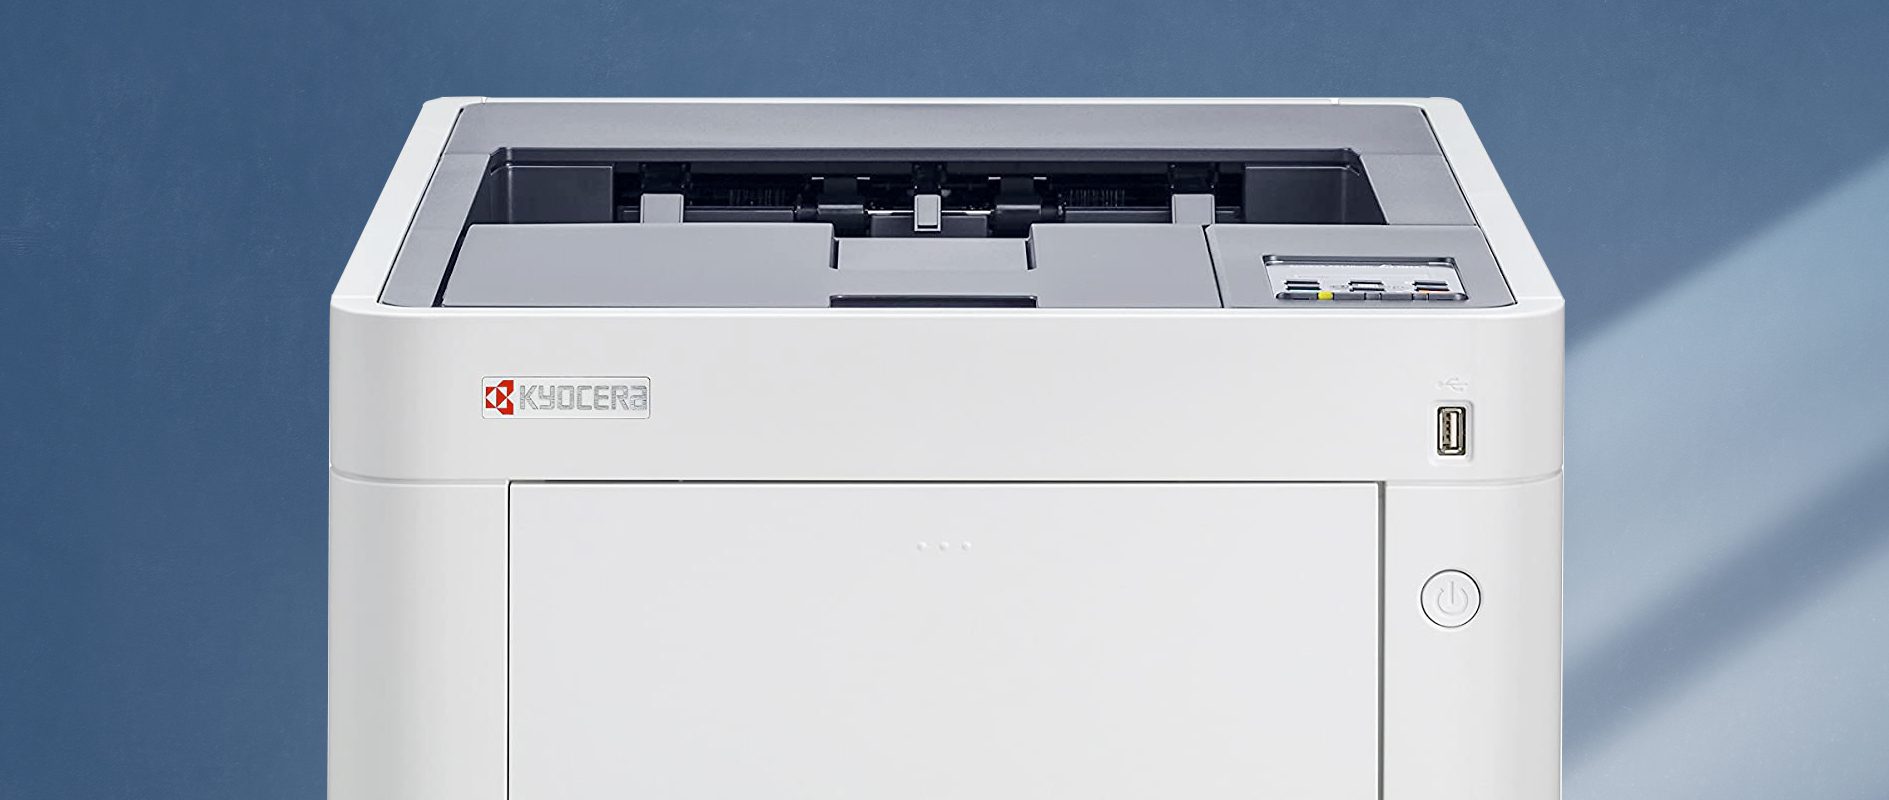 Epson DS-520 Dokumentenscanner